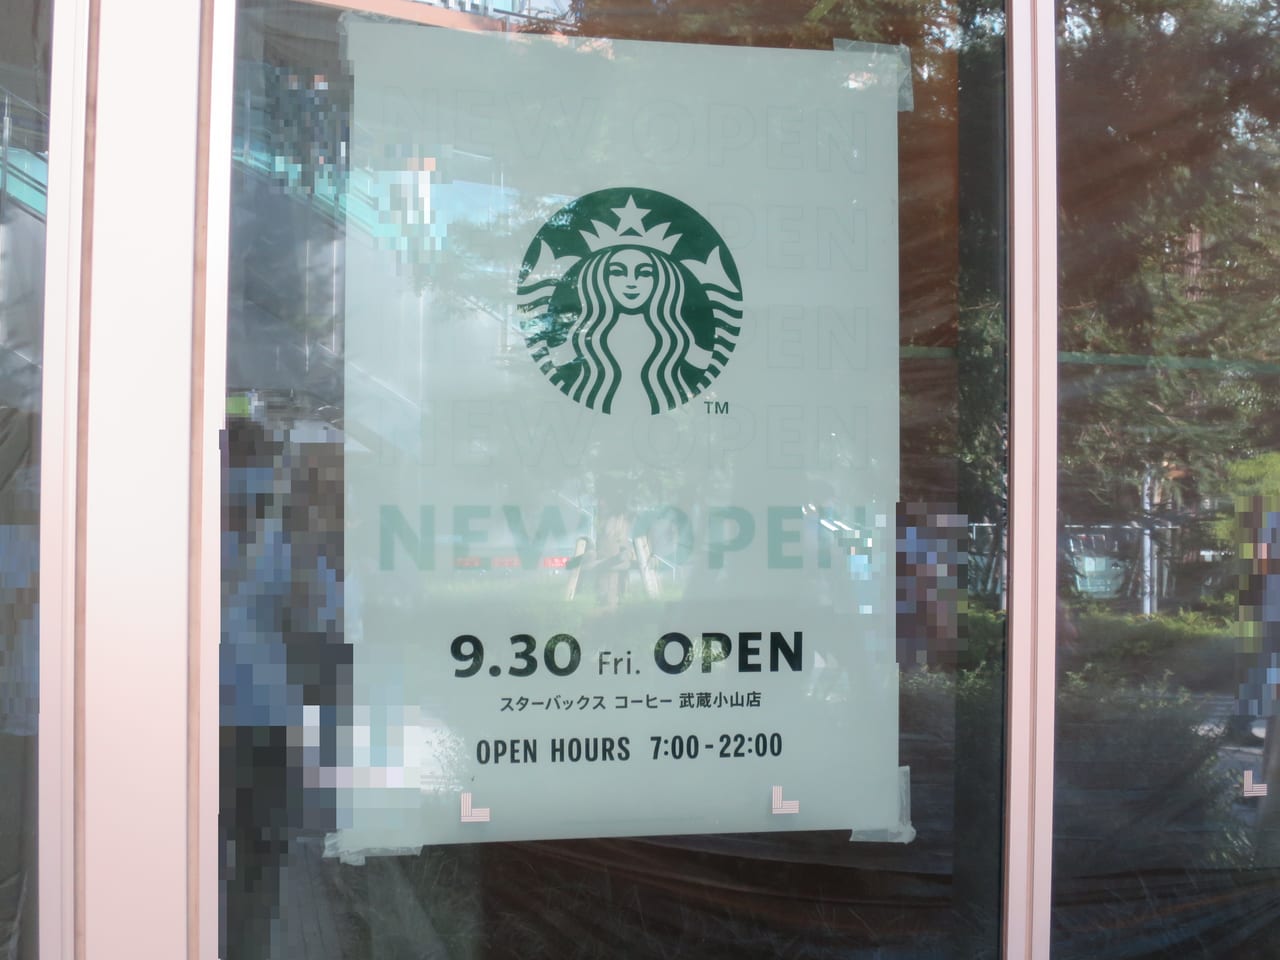 スターバックスコーヒー 武蔵小山店 オープン予定